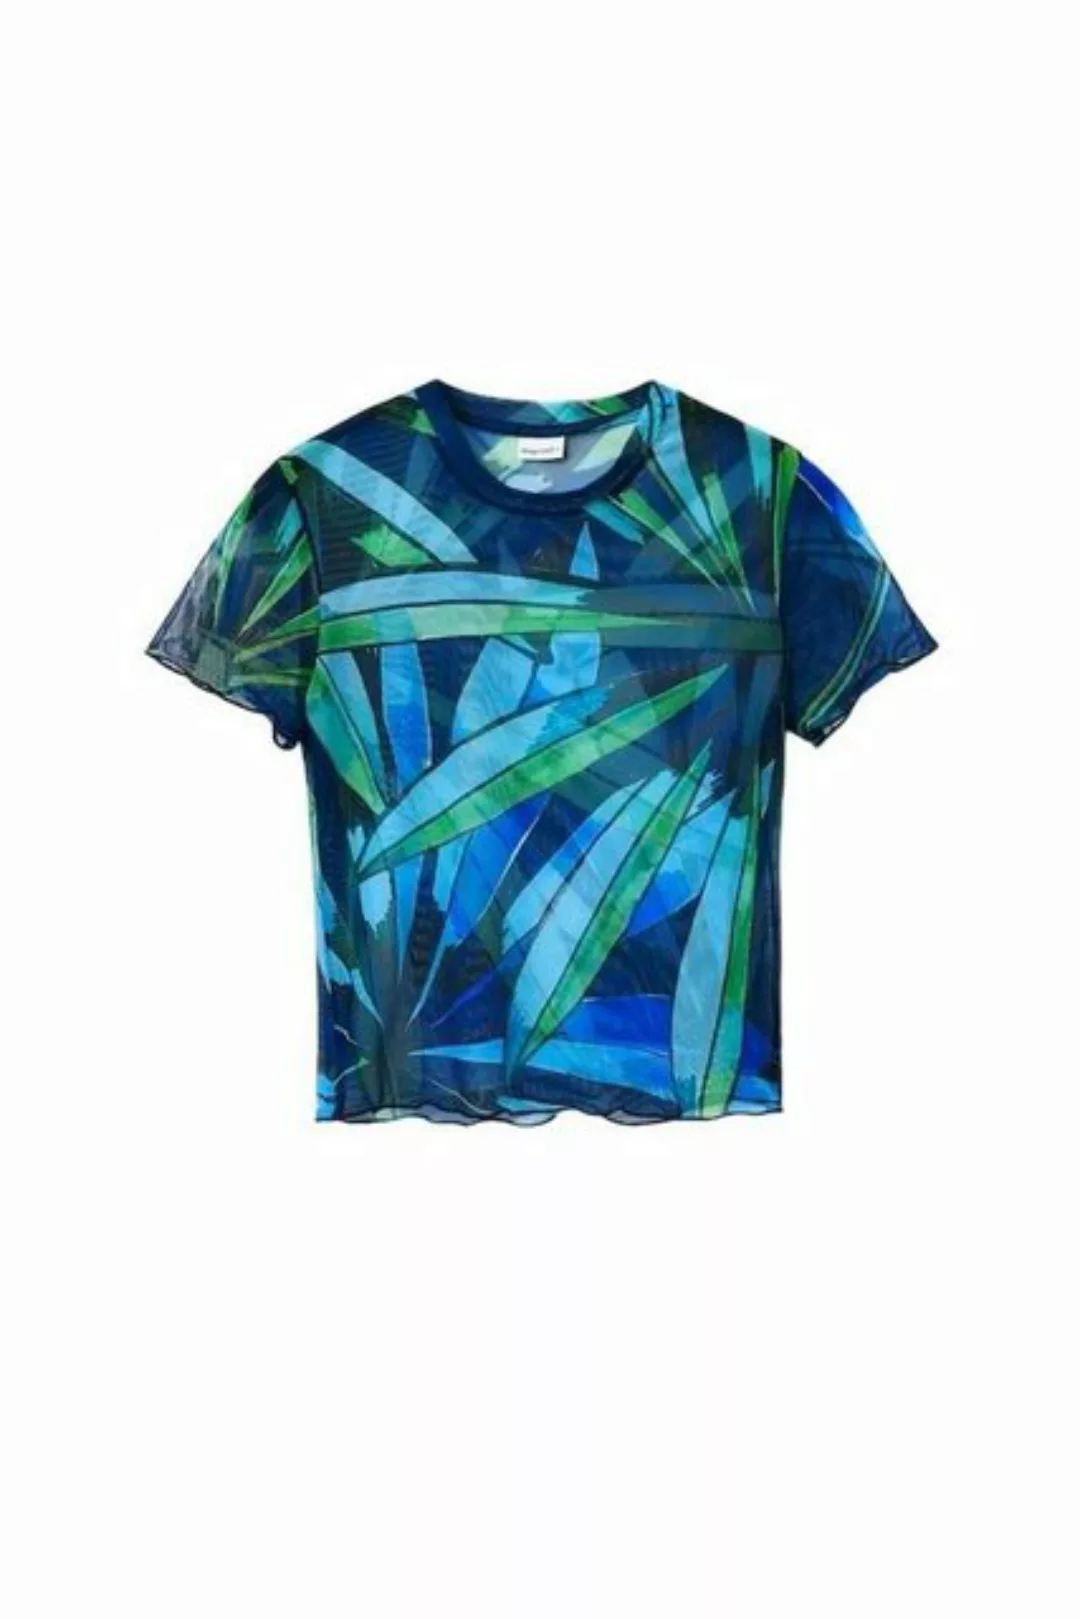 Desigual T-Shirt günstig online kaufen